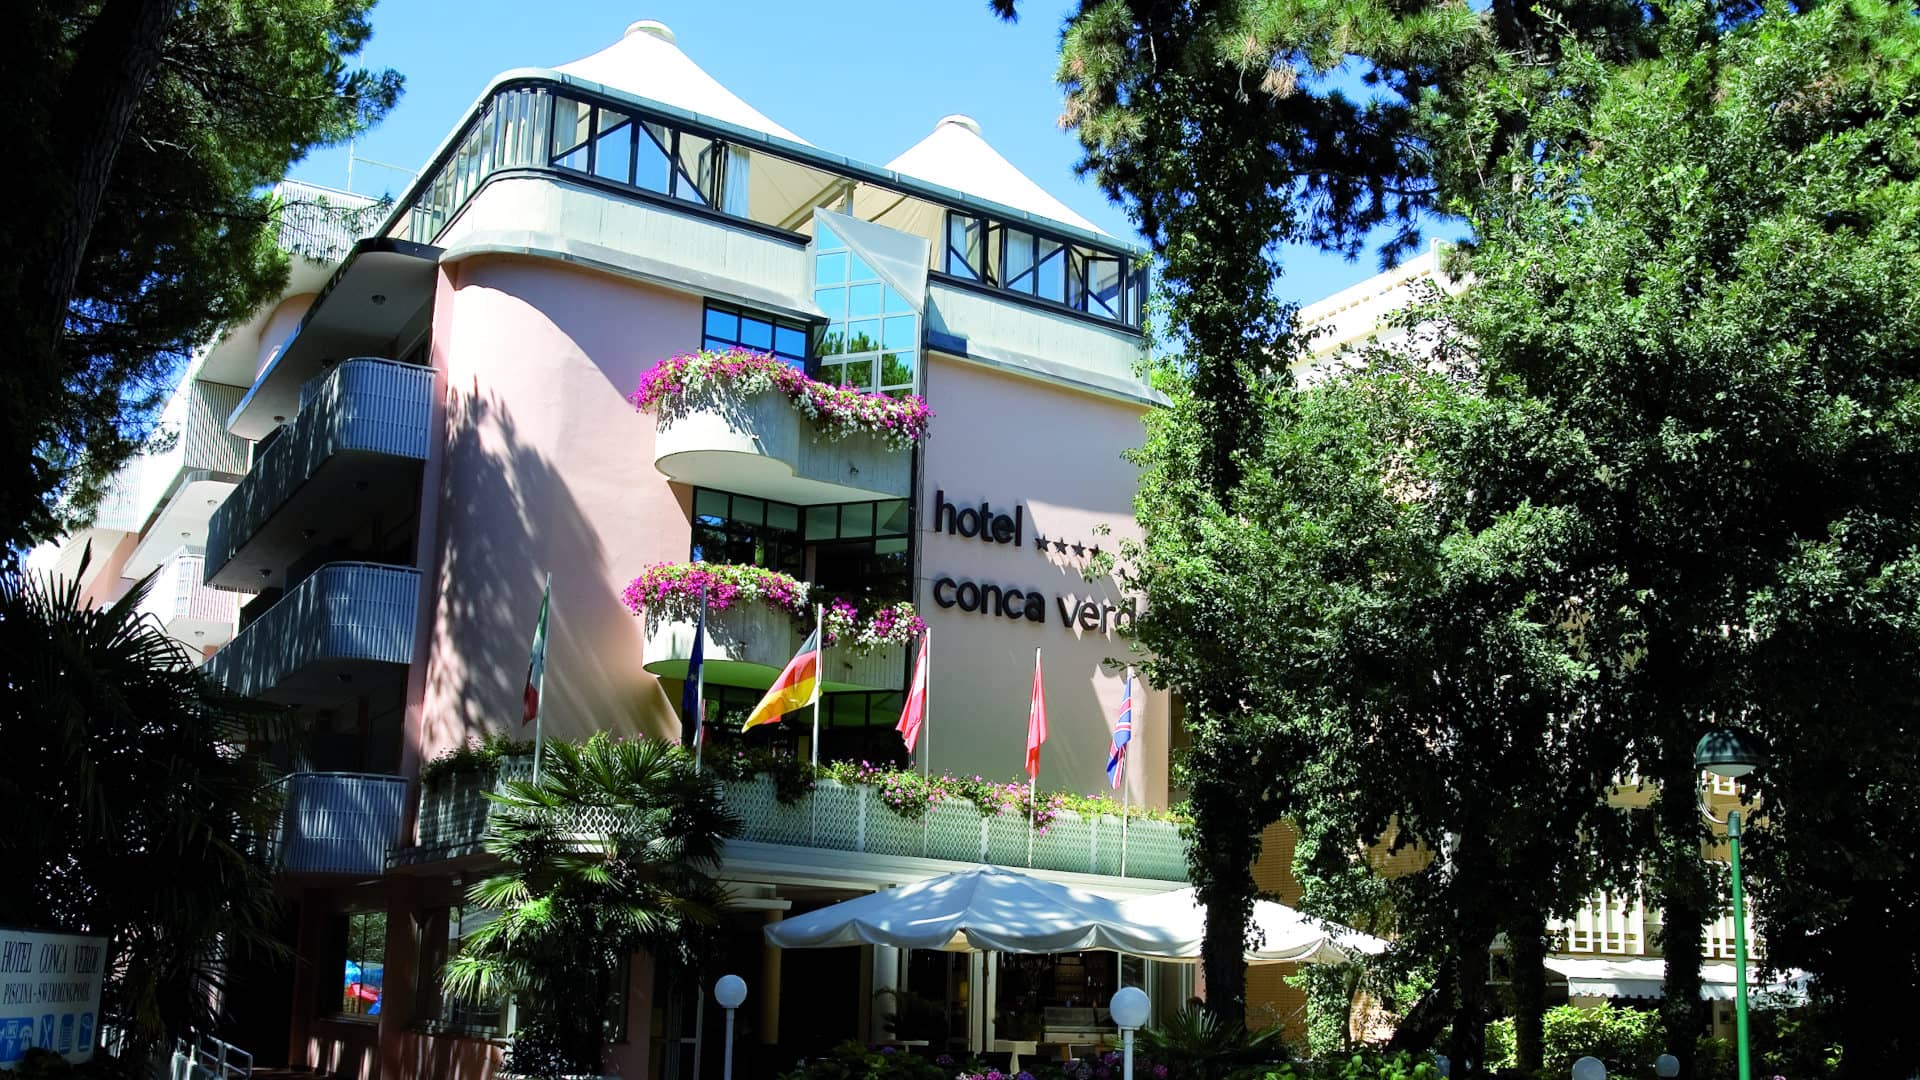 L'esterno dell'hotel Conca Verde a Lignano Sabbiadoro